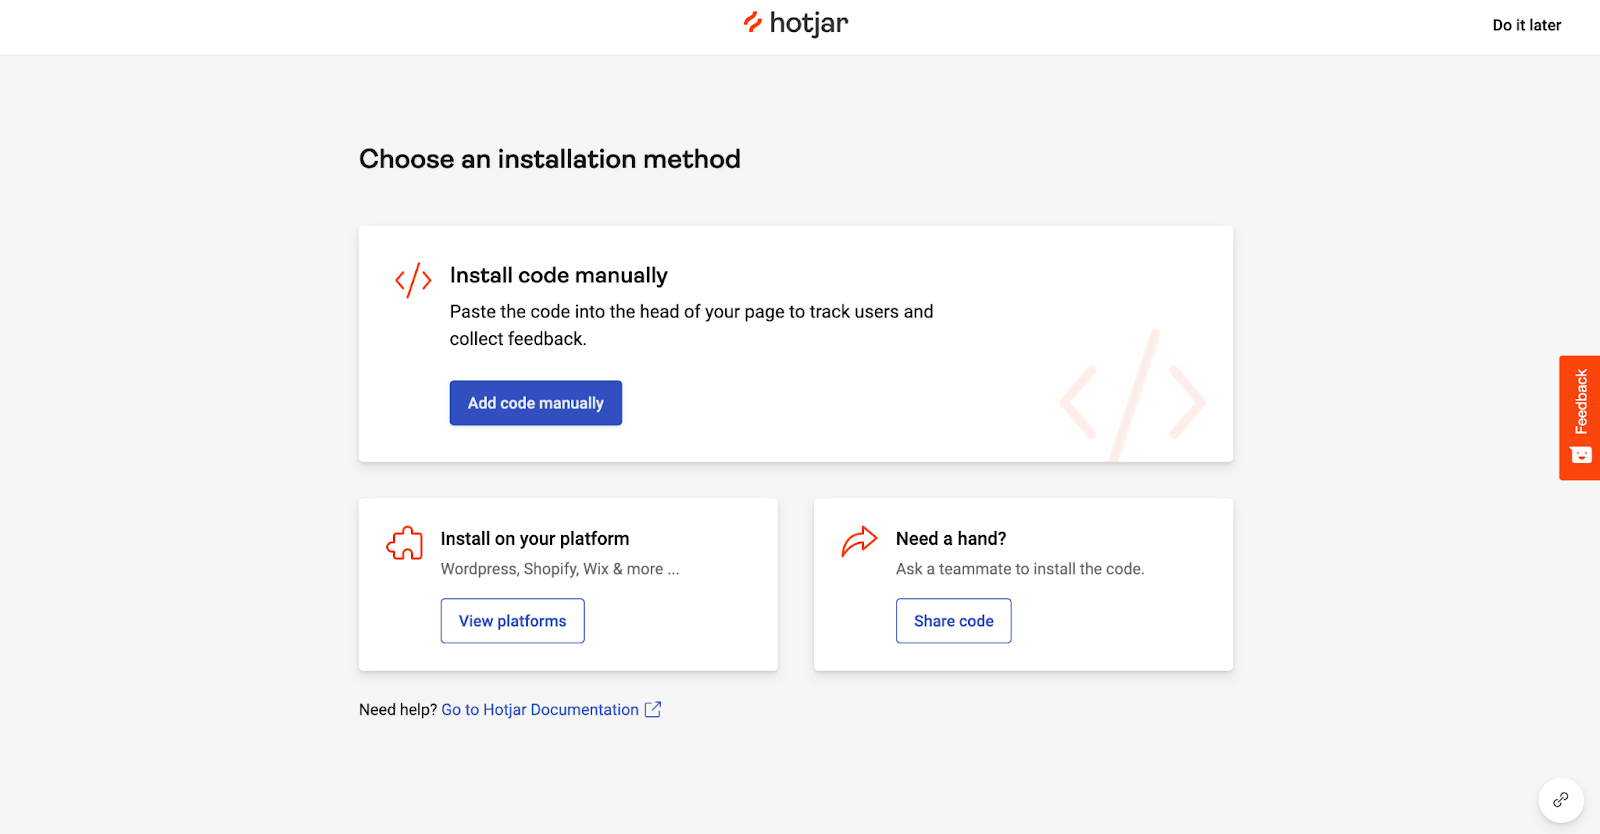 Hotjar's installation method options